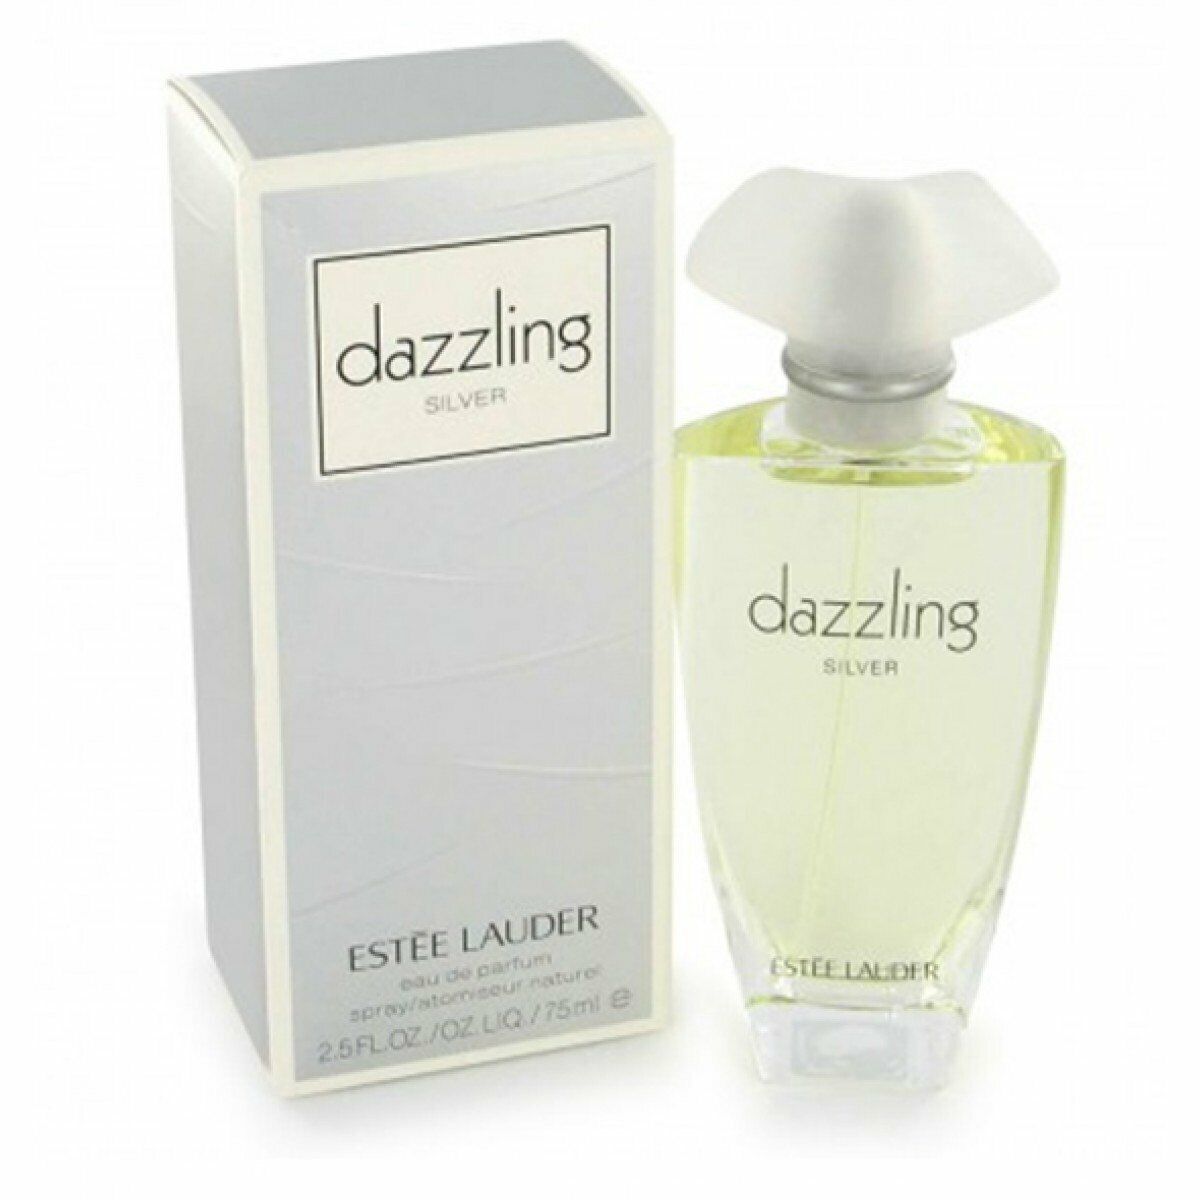 Primary image for Dazzling Silver Par estee lauder 2.5 oz / 75 ML Eau de Parfum Spray pour Femme